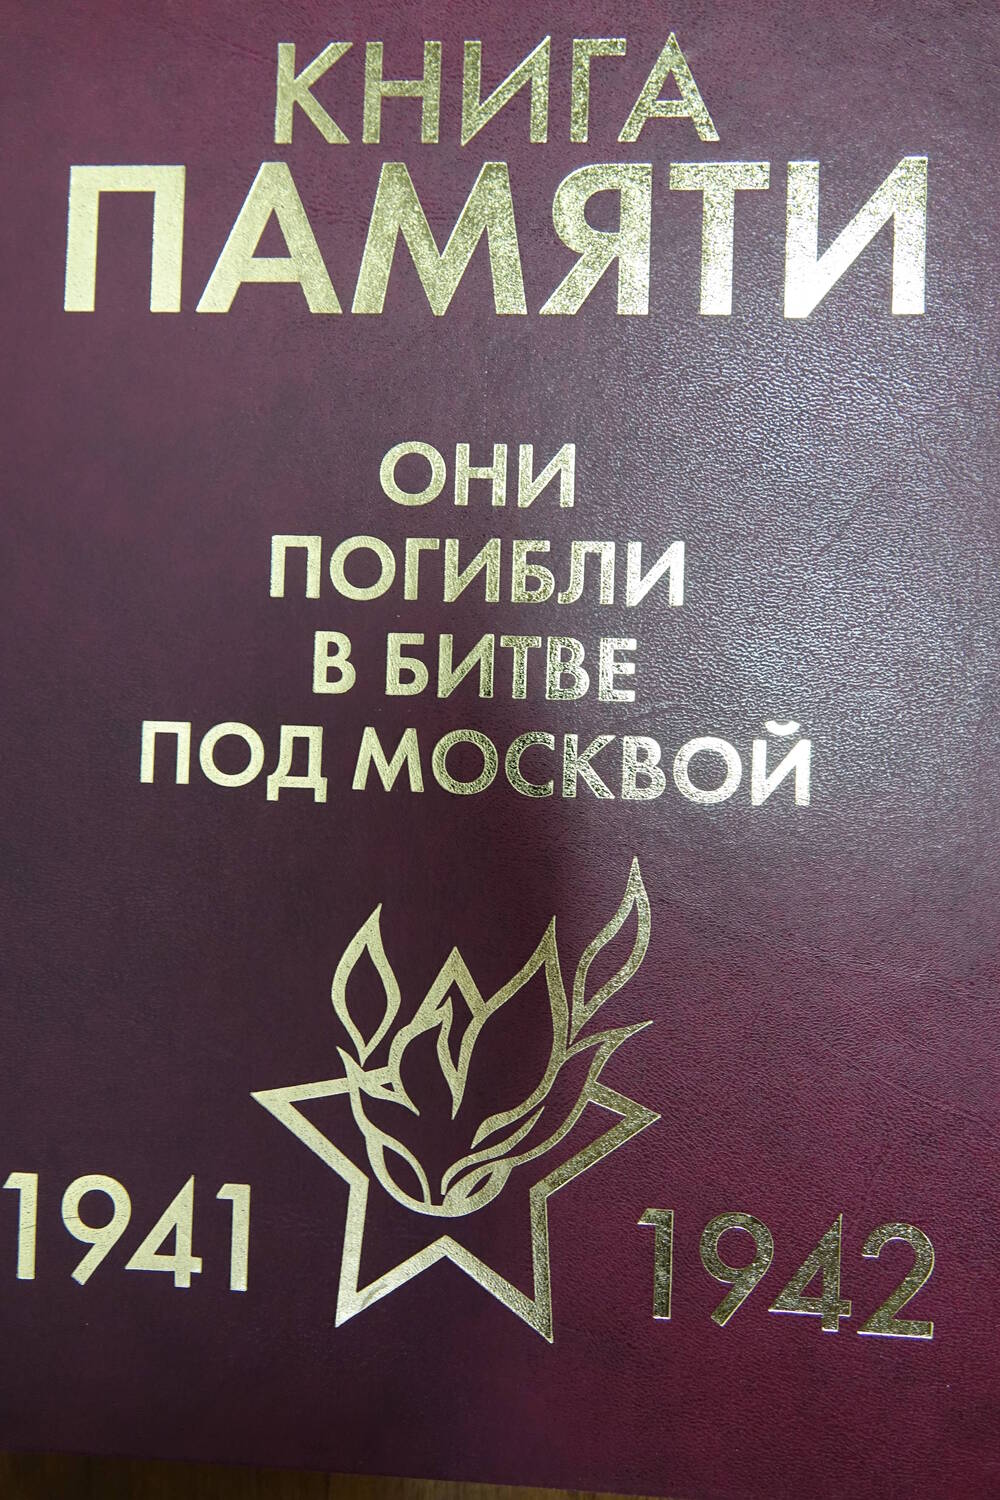 Книга Памяти «Они погибли в битве под Москвой    1941-1942гг.» Том 9 Часть I «М»